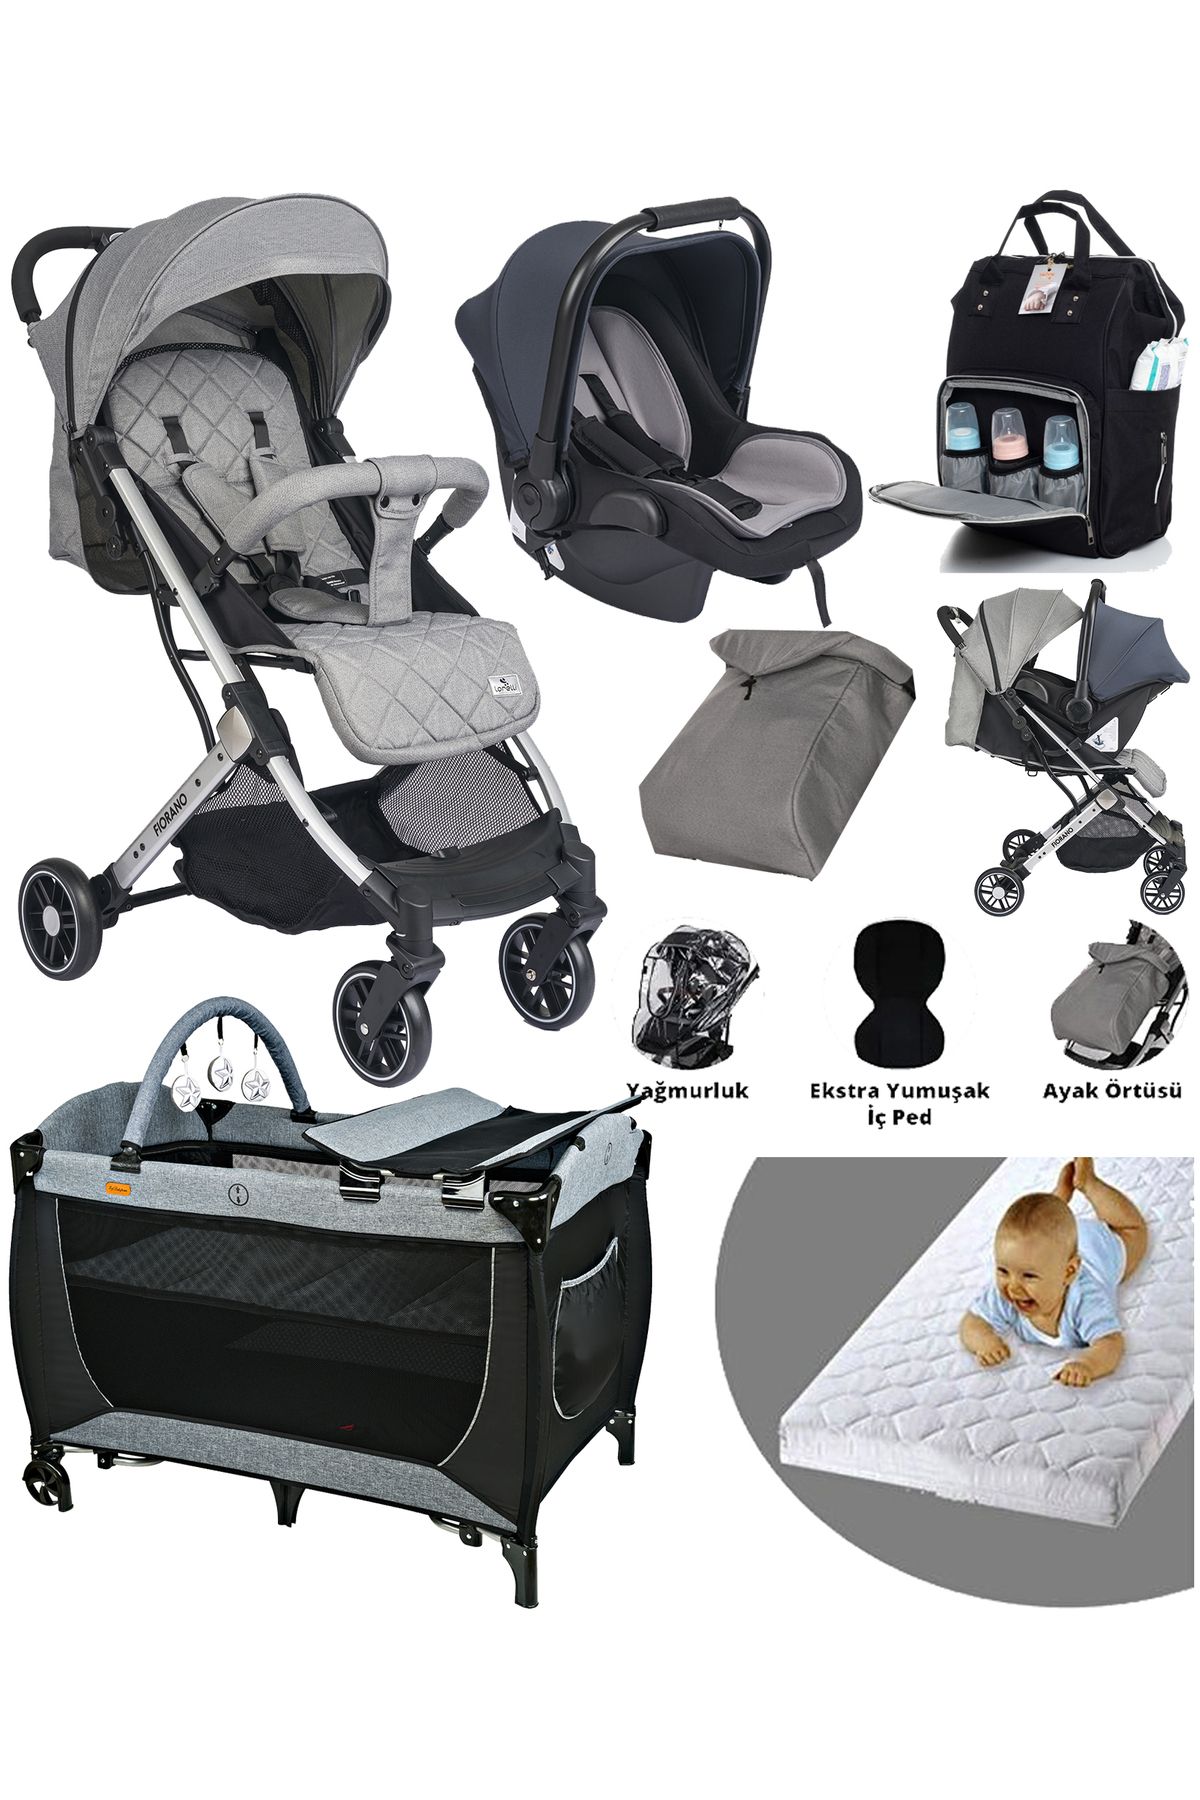 Baby Home 9 In 1 Yeni Doğan Full Takım Lorelli Fiorano Travel Sistem Kabin Bebek Arabası 560 Park Yatak Beşik